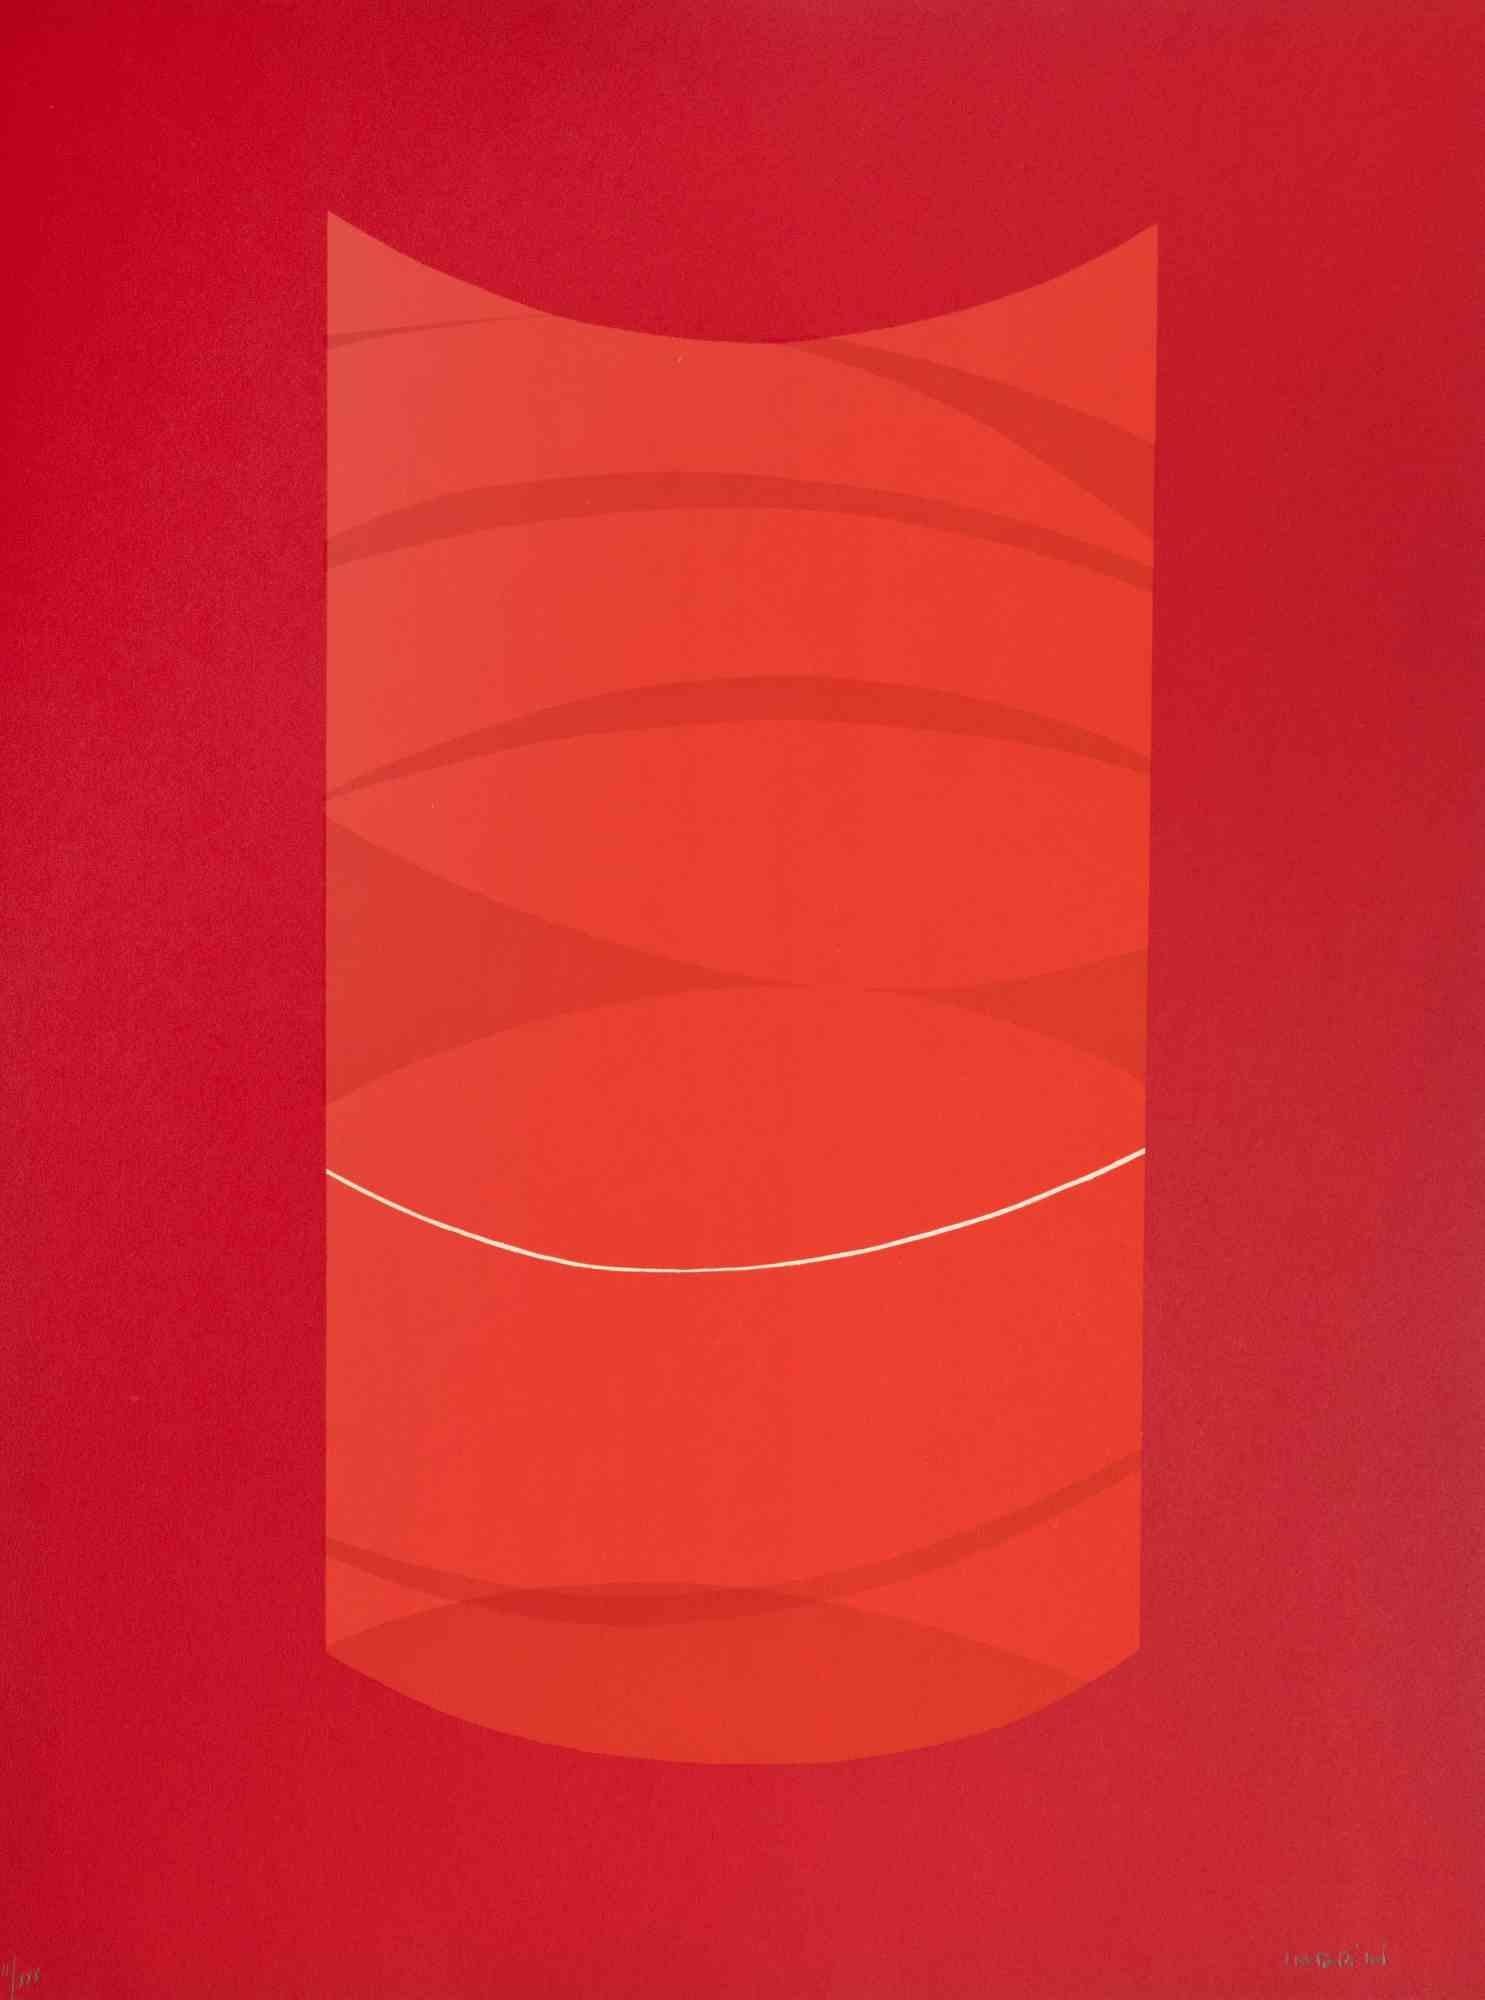 Red One est une œuvre d'art contemporain réalisée par Lorenzo Indrimi dans les années 1970.

Lithographie en couleurs mélangées.

Signé à la main et daté dans la marge inférieure.

Edition de II/XXX